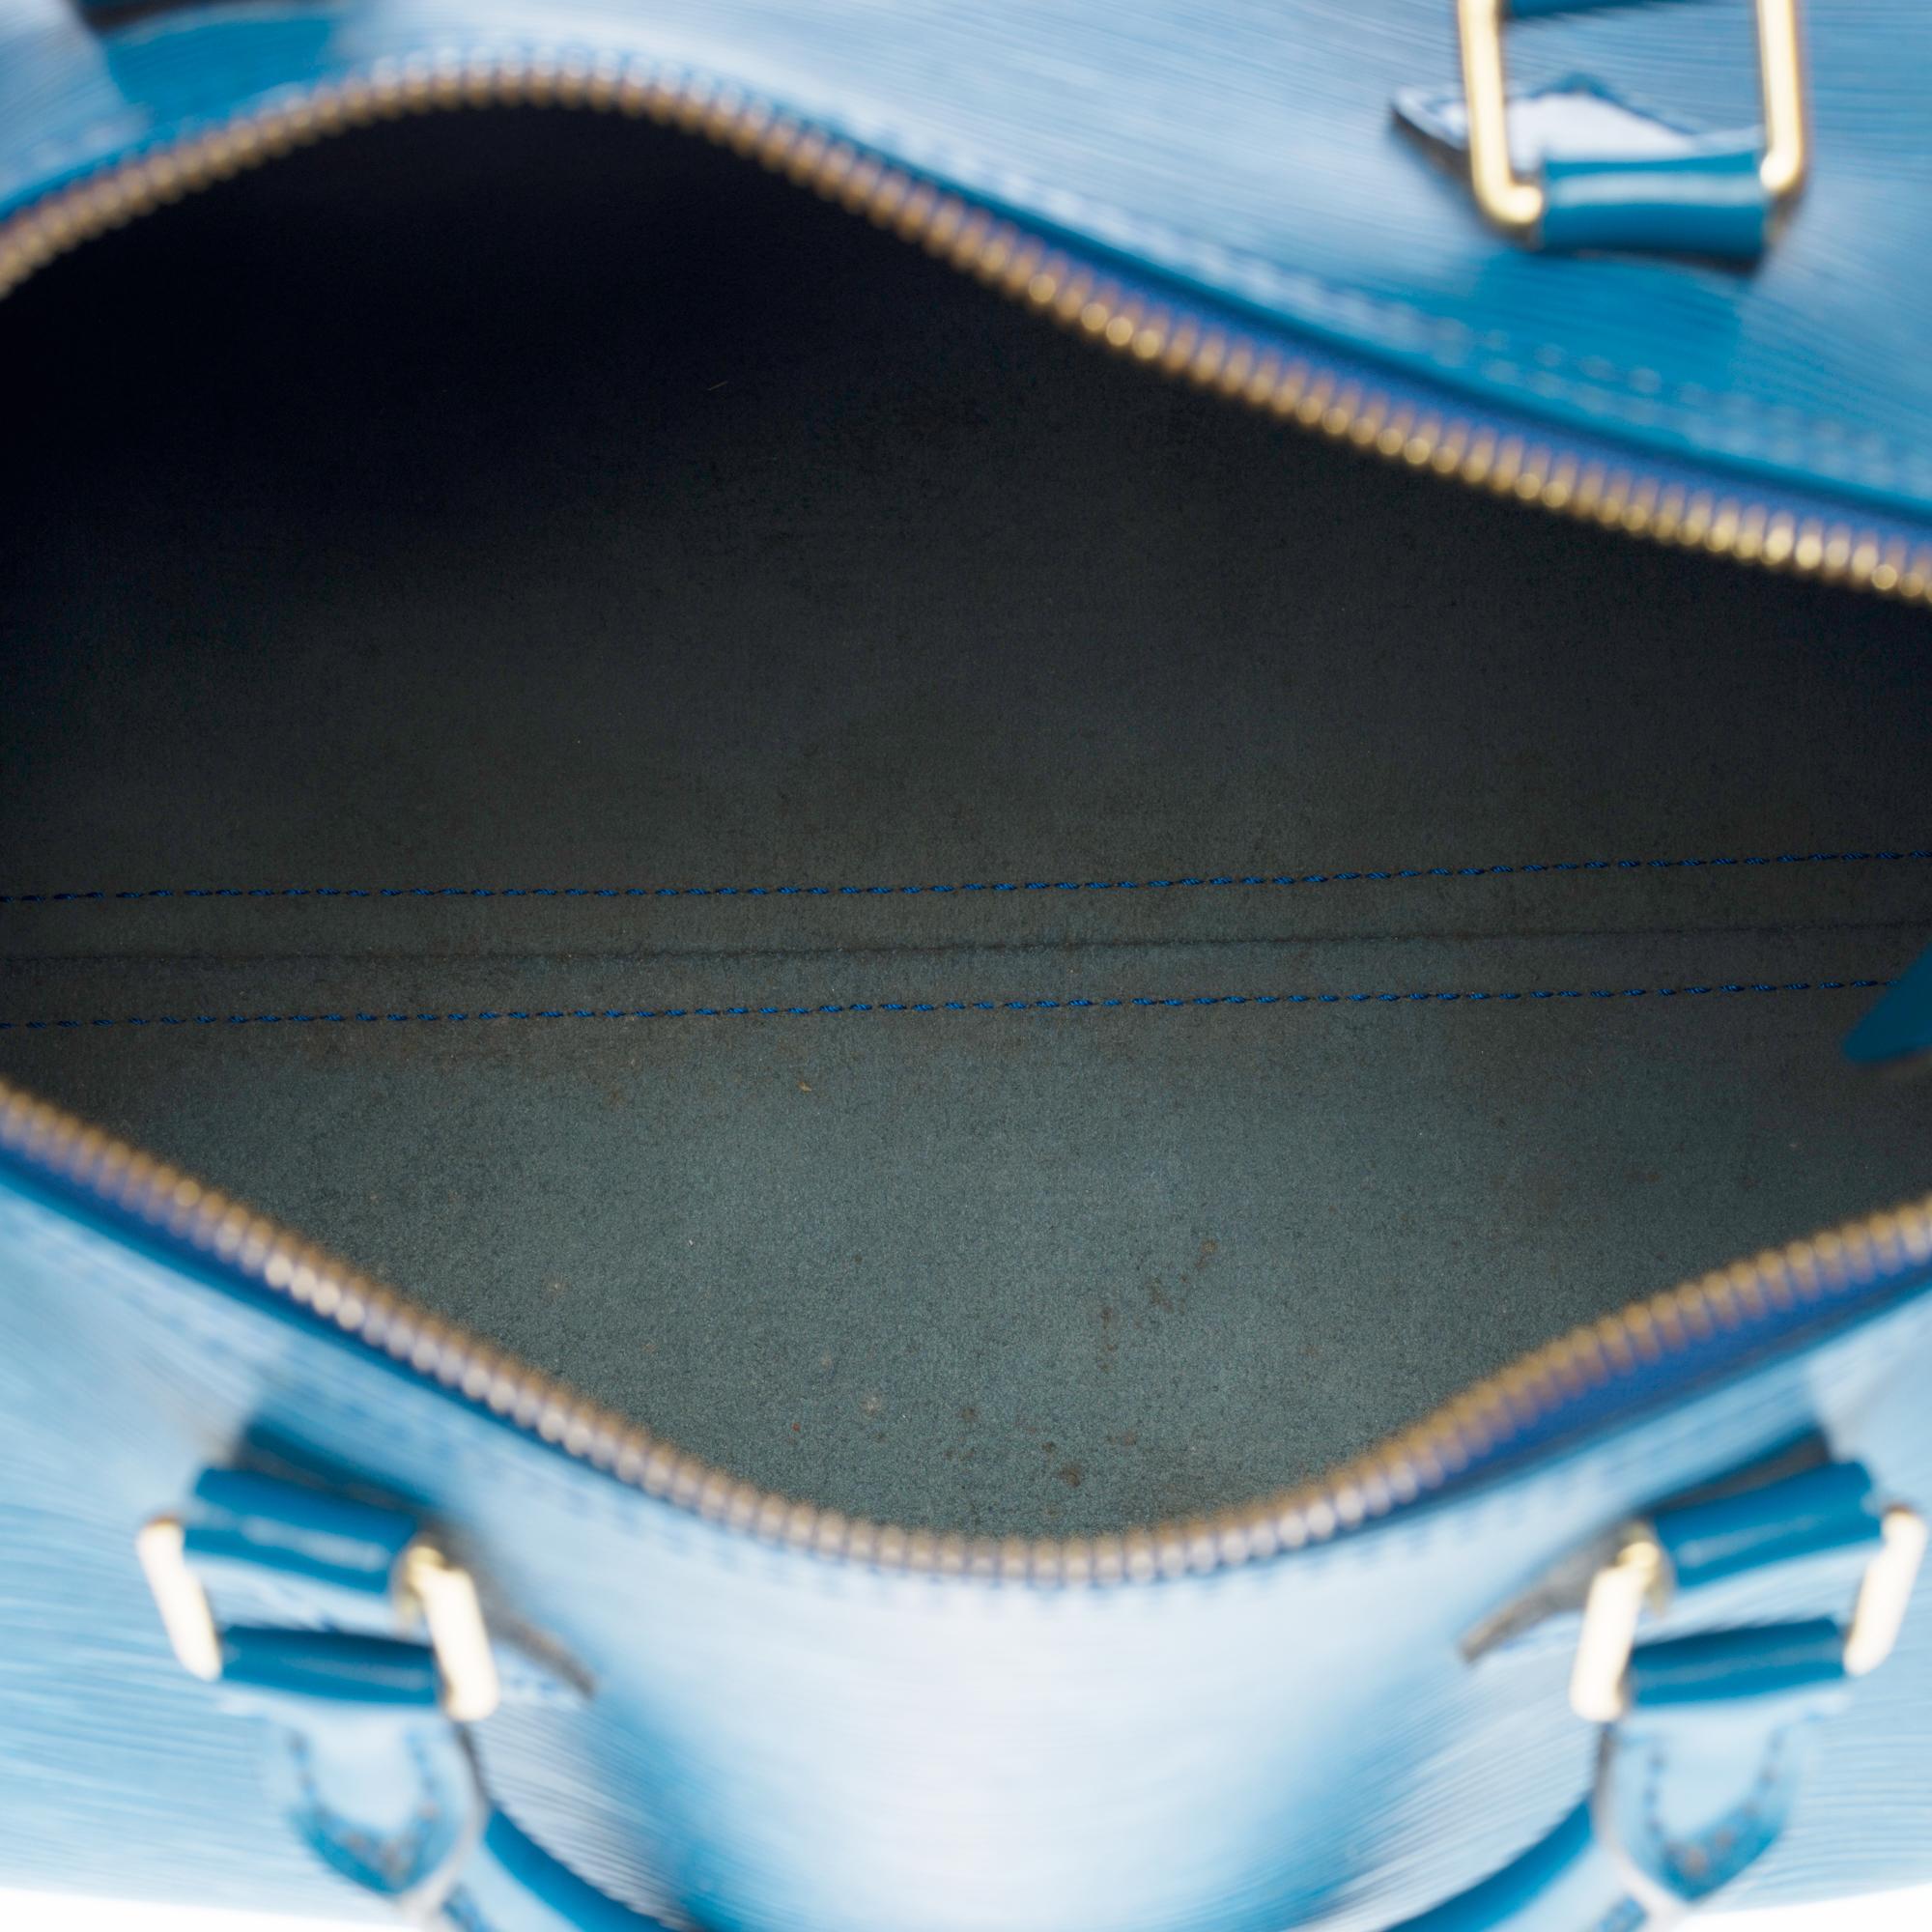 Louis Vuitton Speedy 30 Handtasche aus blauem kobaltfarbenem Pi-Leder und goldenen Beschlägen 2